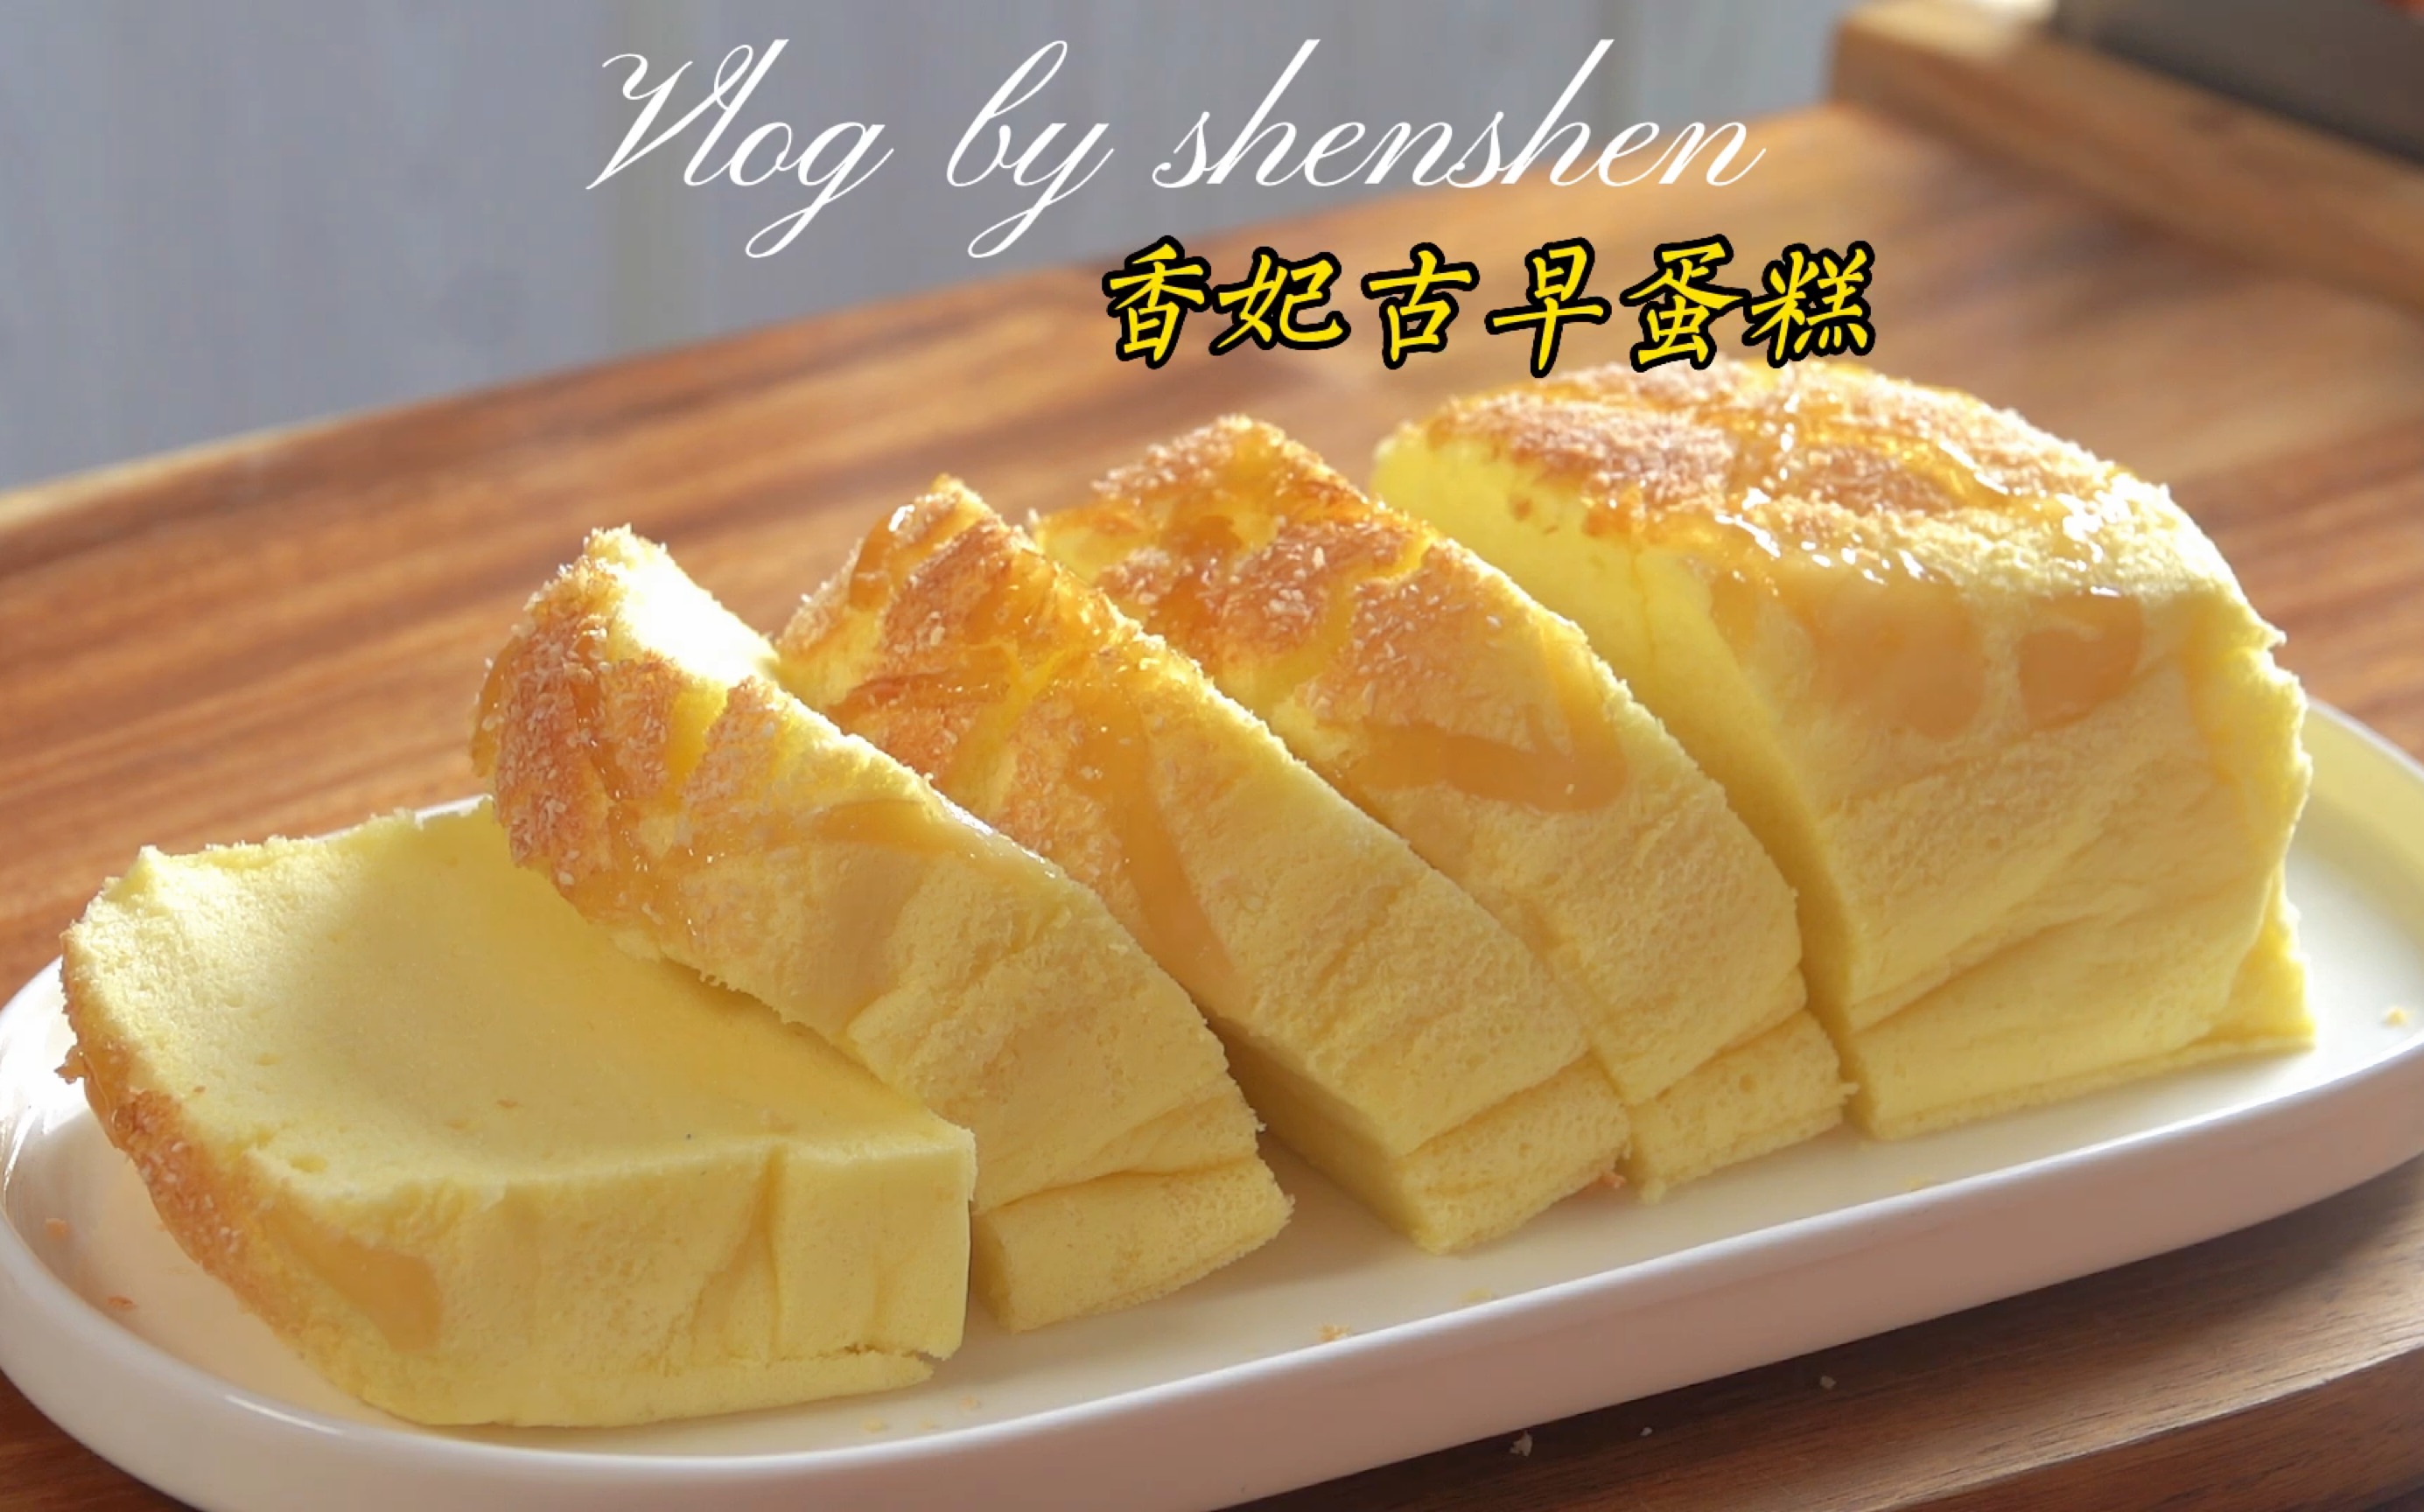 台灣古早味蛋糕專賣店「台樂蛋糕」於東京初次登陸 | MOSHI MOSHI NIPPON | もしもしにっぽん